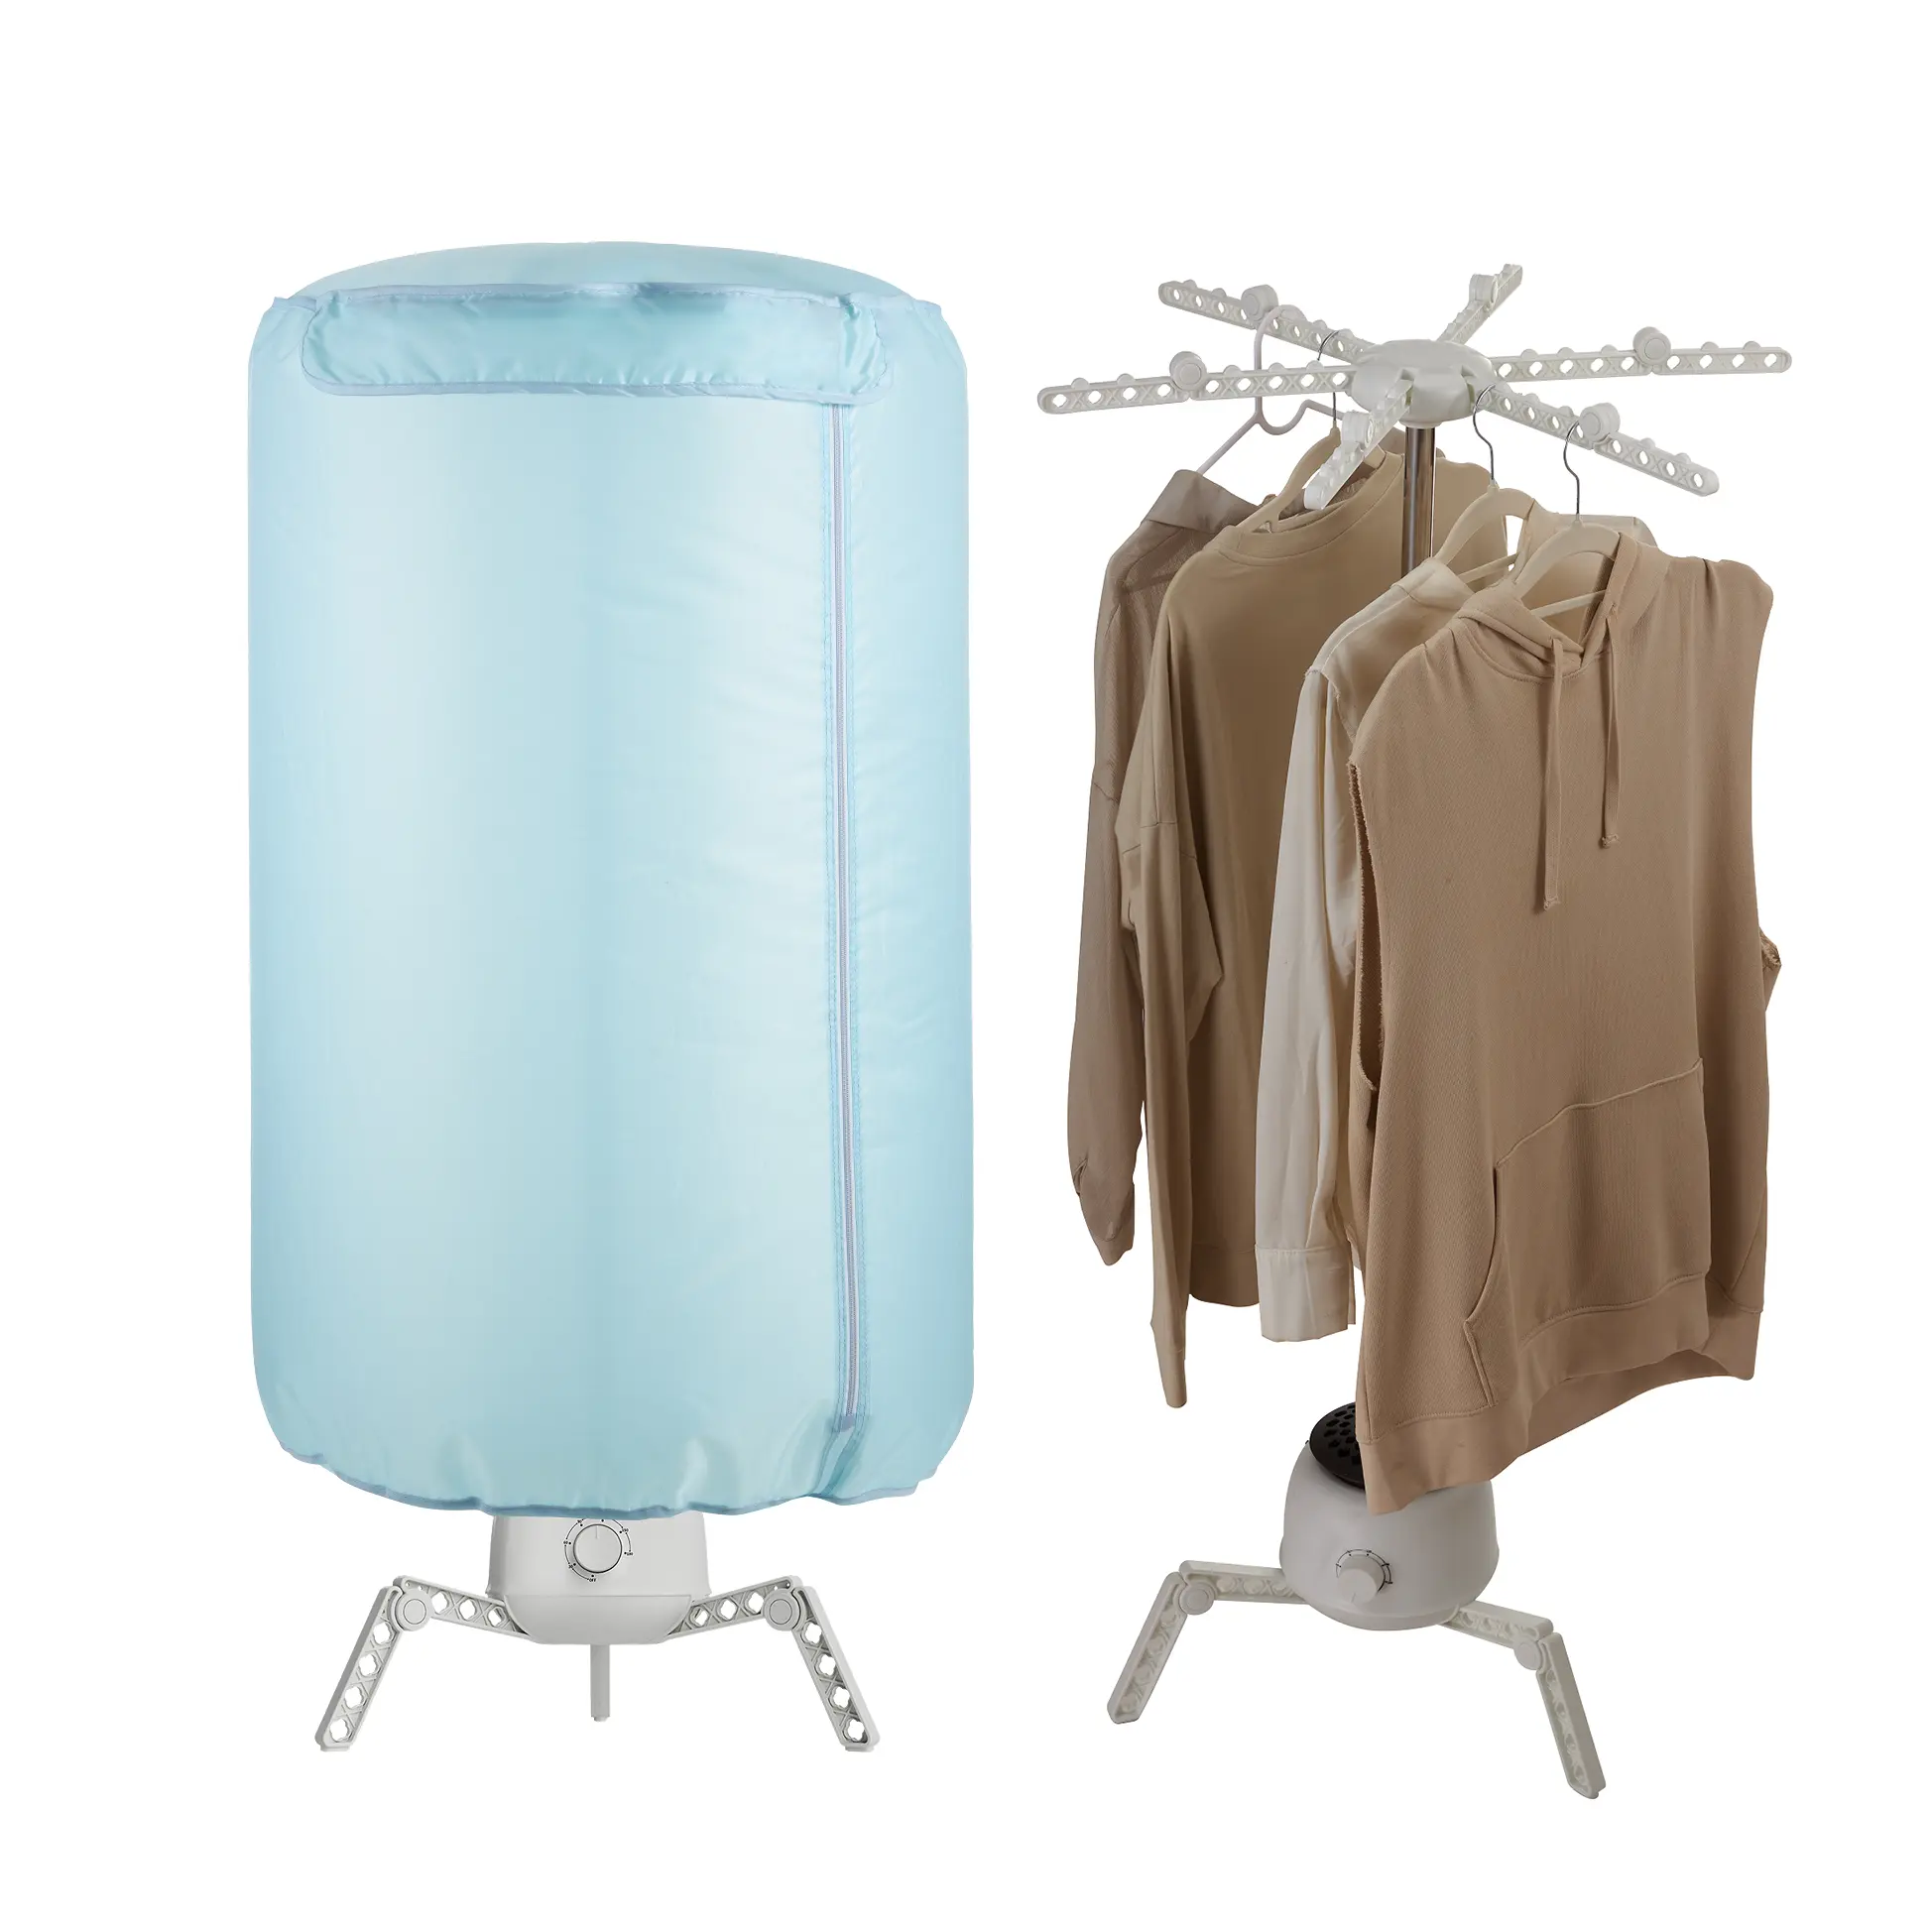 Mini plegable de aluminio eléctrico 3 patas silencioso ahorrar electricidad raiment secador de ropa secador de roupa Secadora